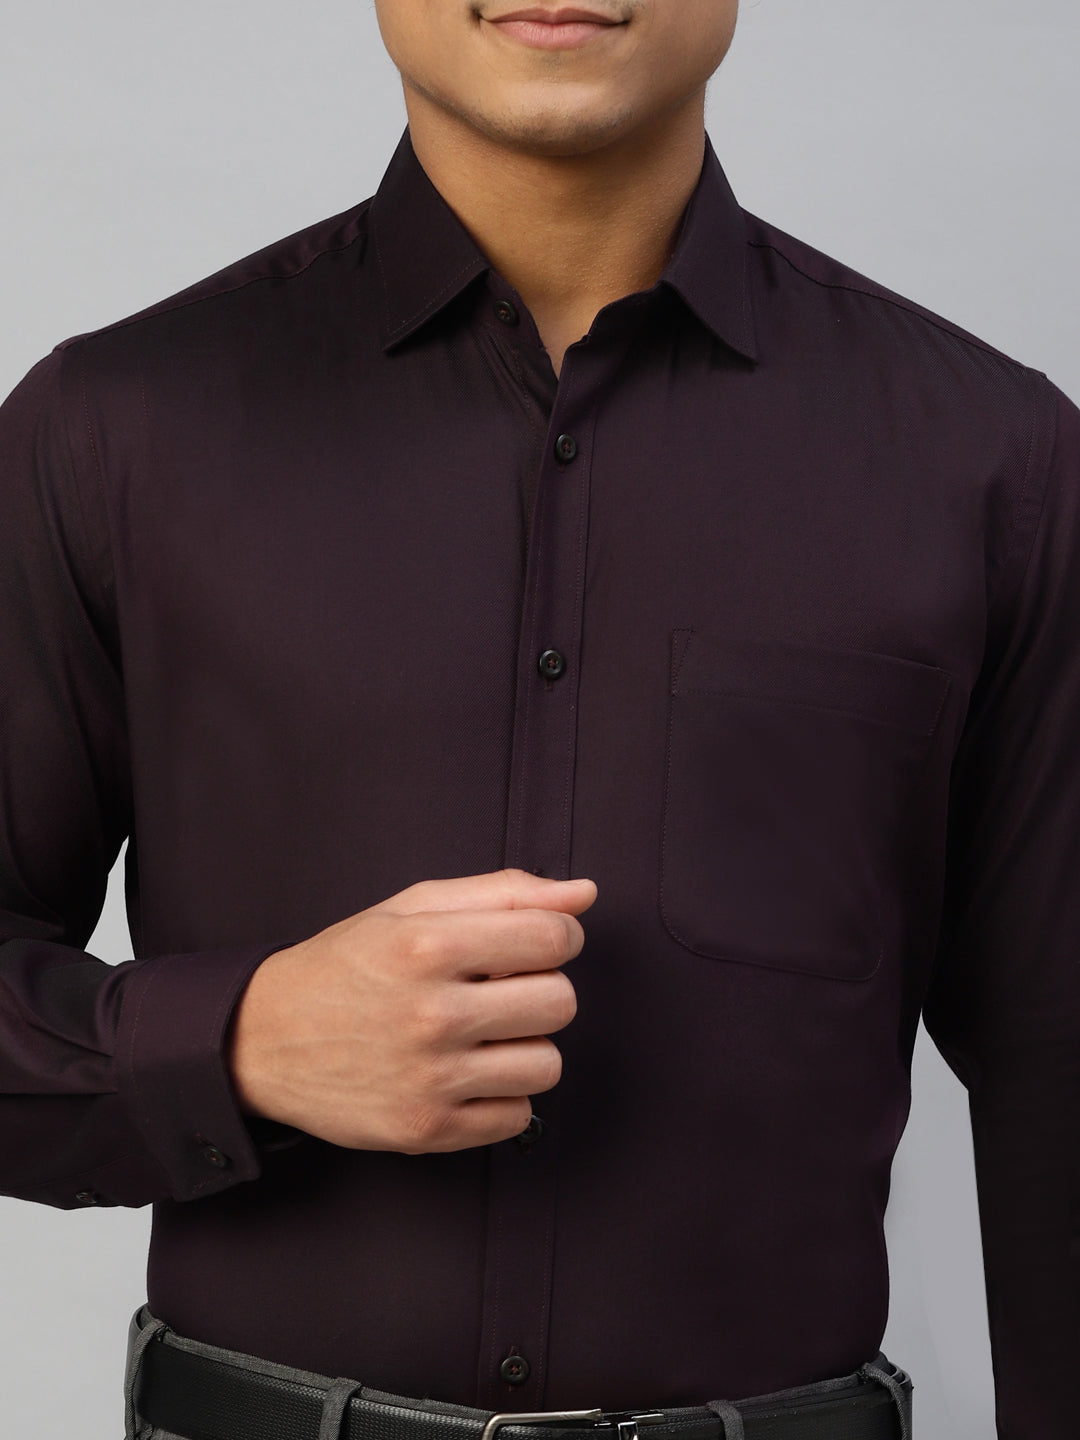 Don Vino Men's Solid Maroon Full Sleeve Regular Fit Shirt